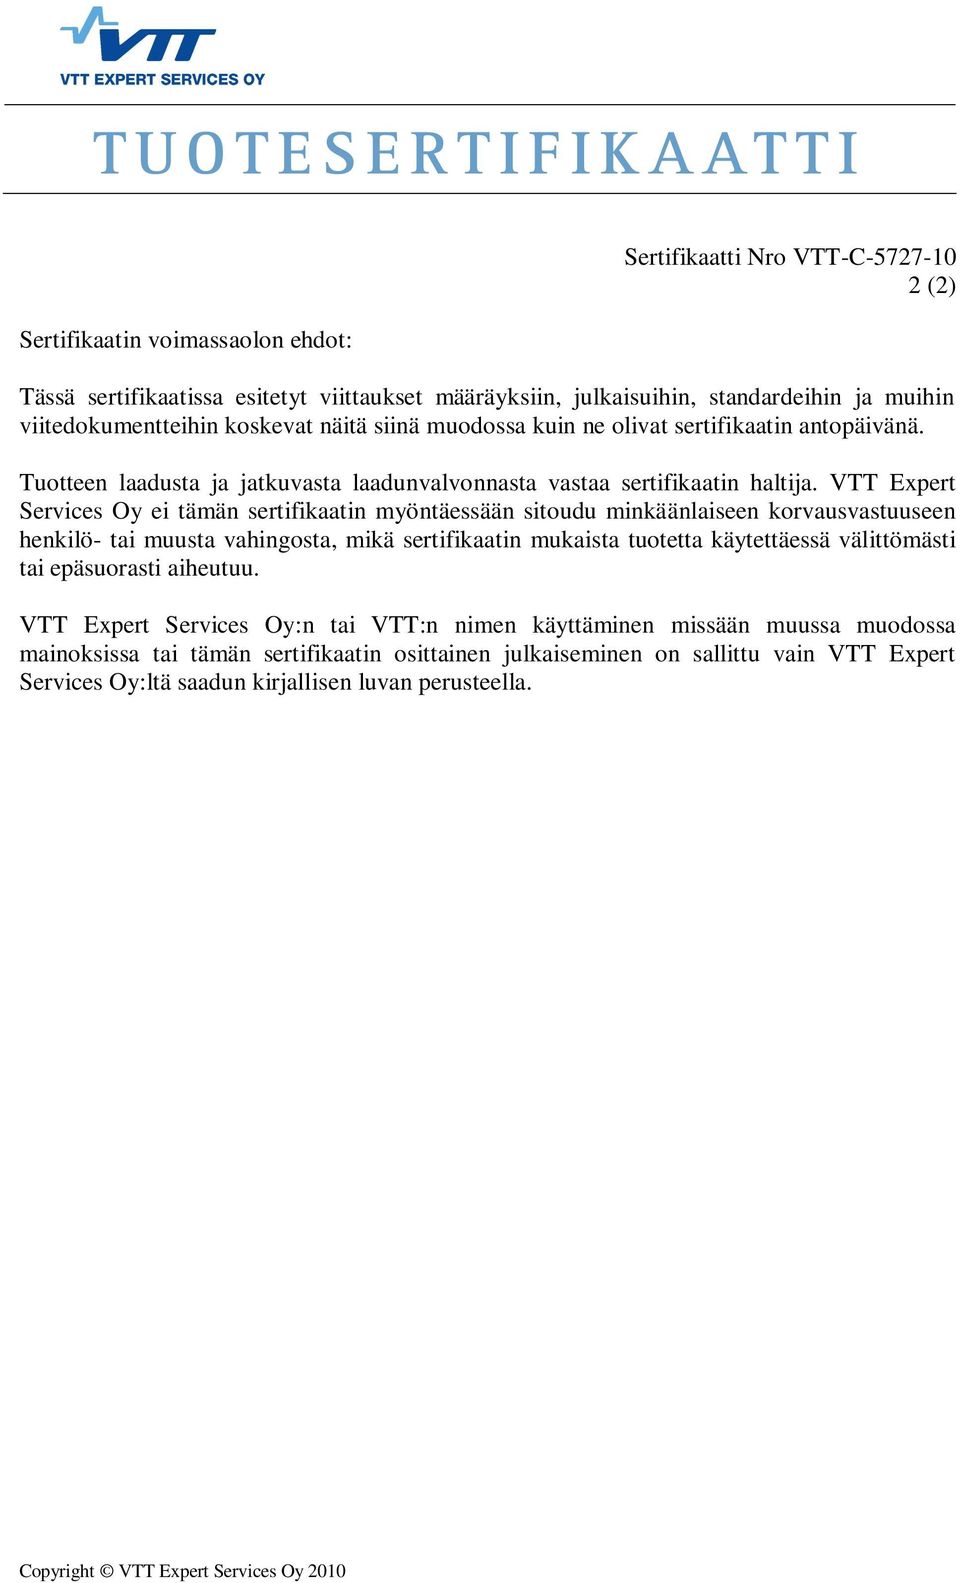 VTT Expert Services Oy ei tämän sertifikaatin myöntäessään sitoudu minkäänlaiseen korvausvastuuseen henkilö- tai muusta vahingosta, mikä sertifikaatin mukaista tuotetta käytettäessä välittömästi